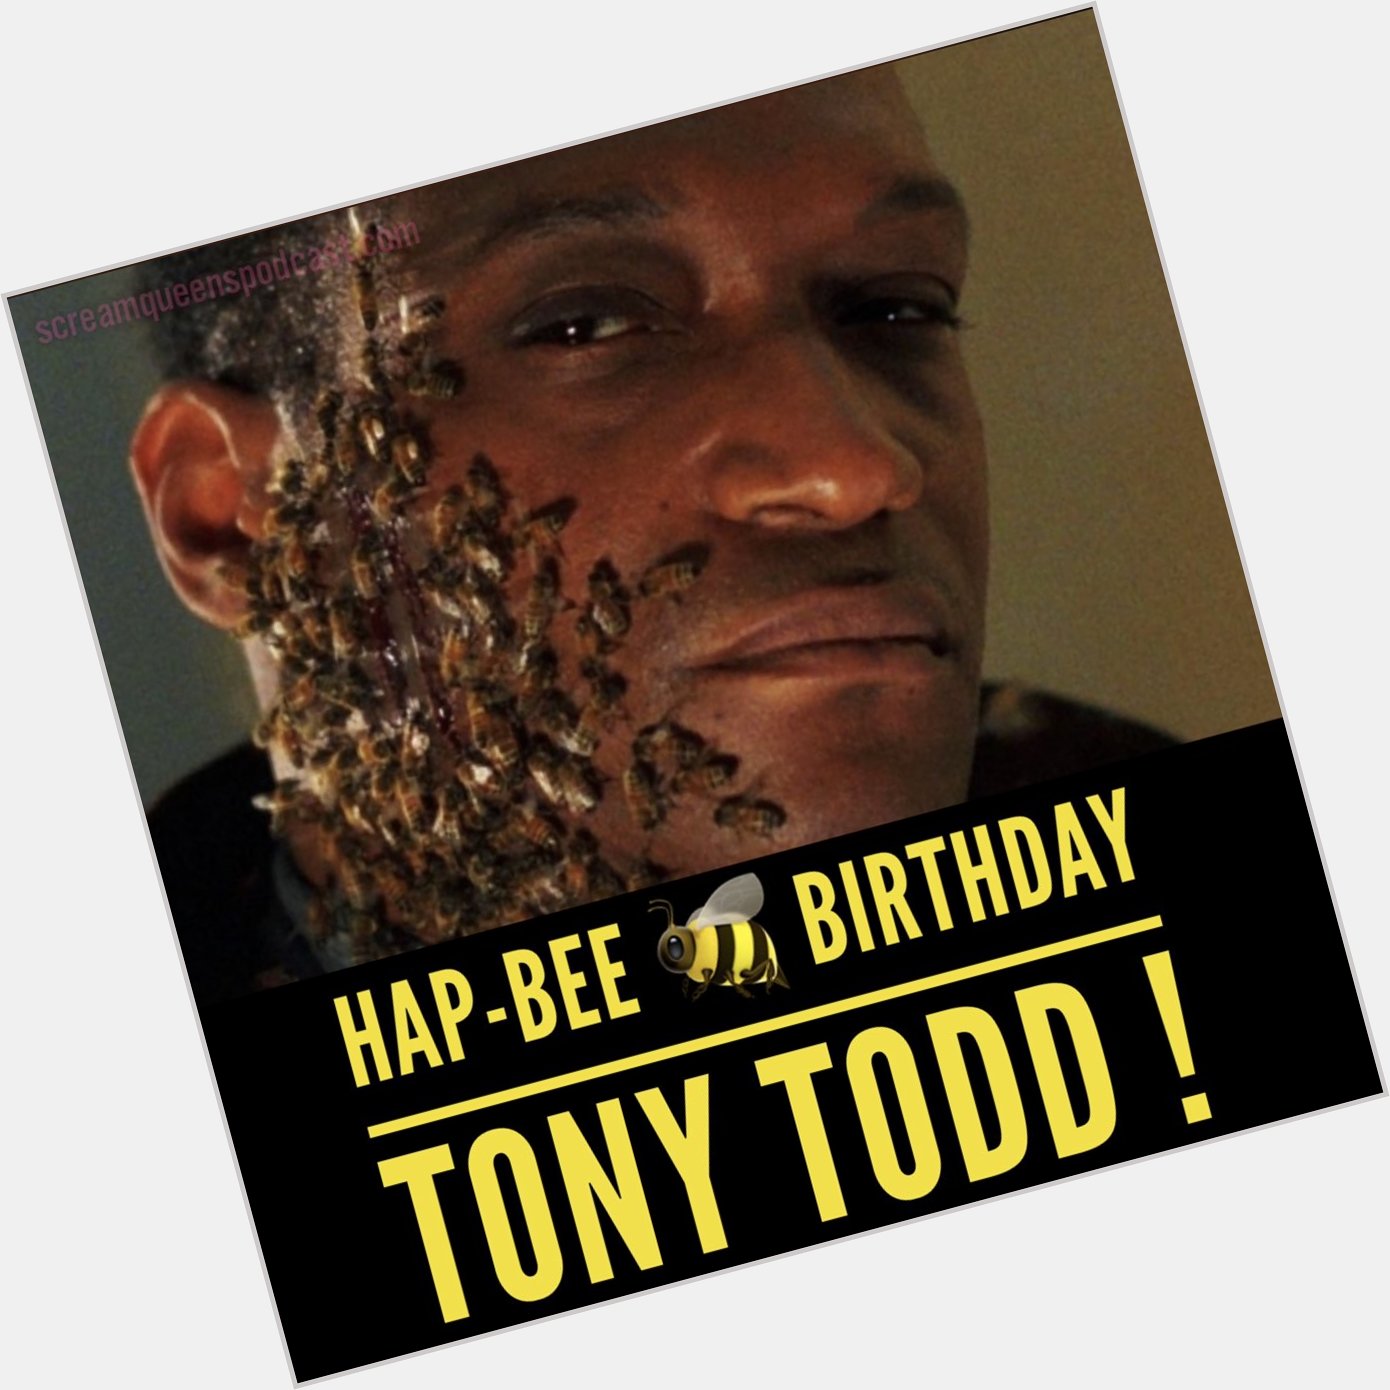 Happy Birthday Tony Todd!!  